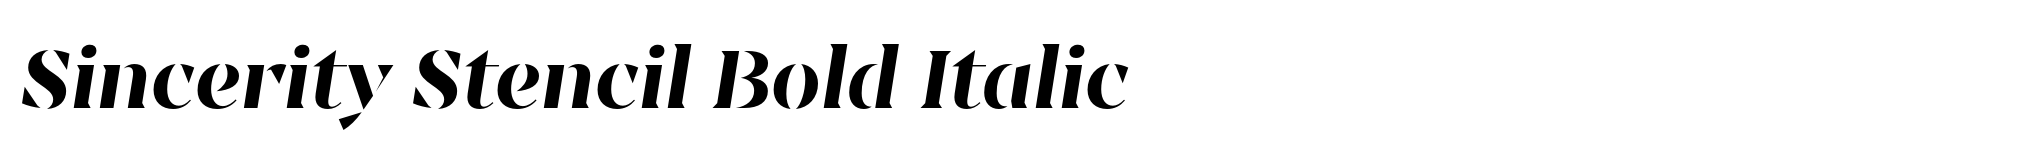 Sincerity Stencil Bold Italic image